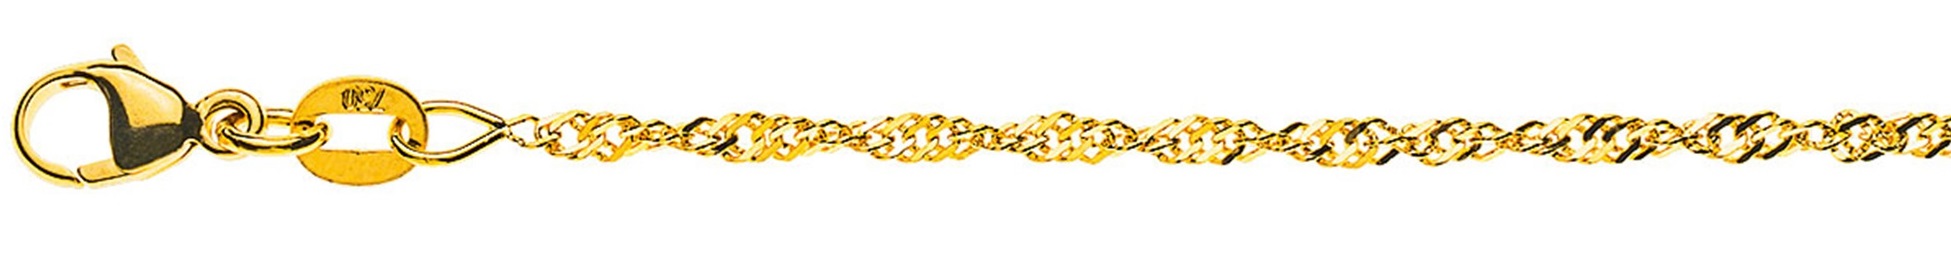 AURONOS Prestige Yellow Gold 18K Singapore Necklace 42cm 1.9mm